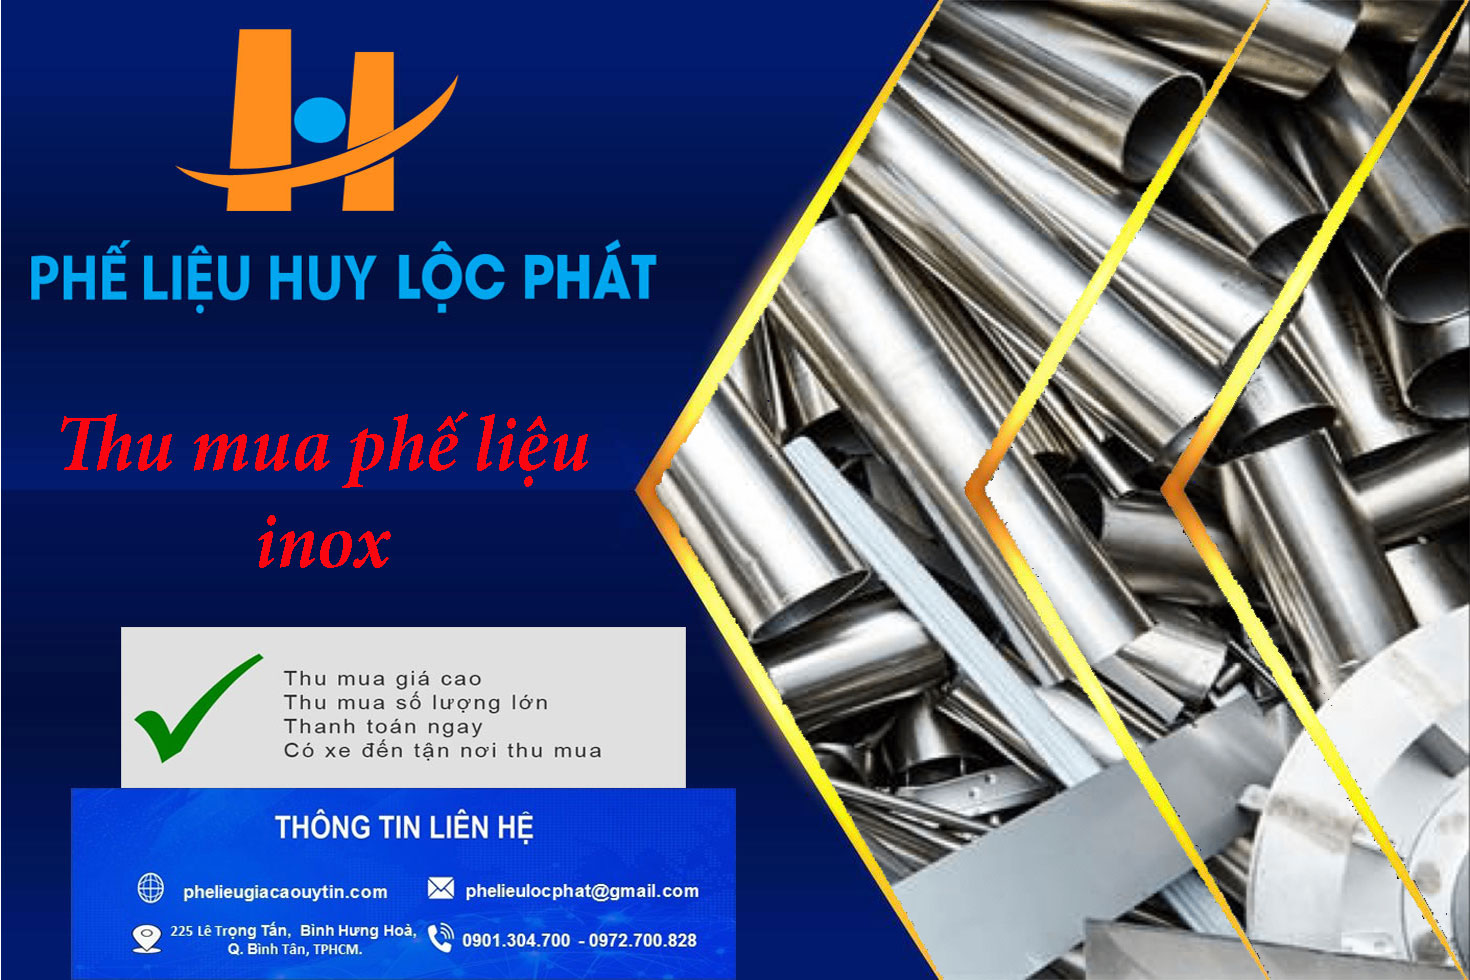 Thu mua phế liệu inox – Công ty TNHH Phế Liệu Huy Lộc Phát